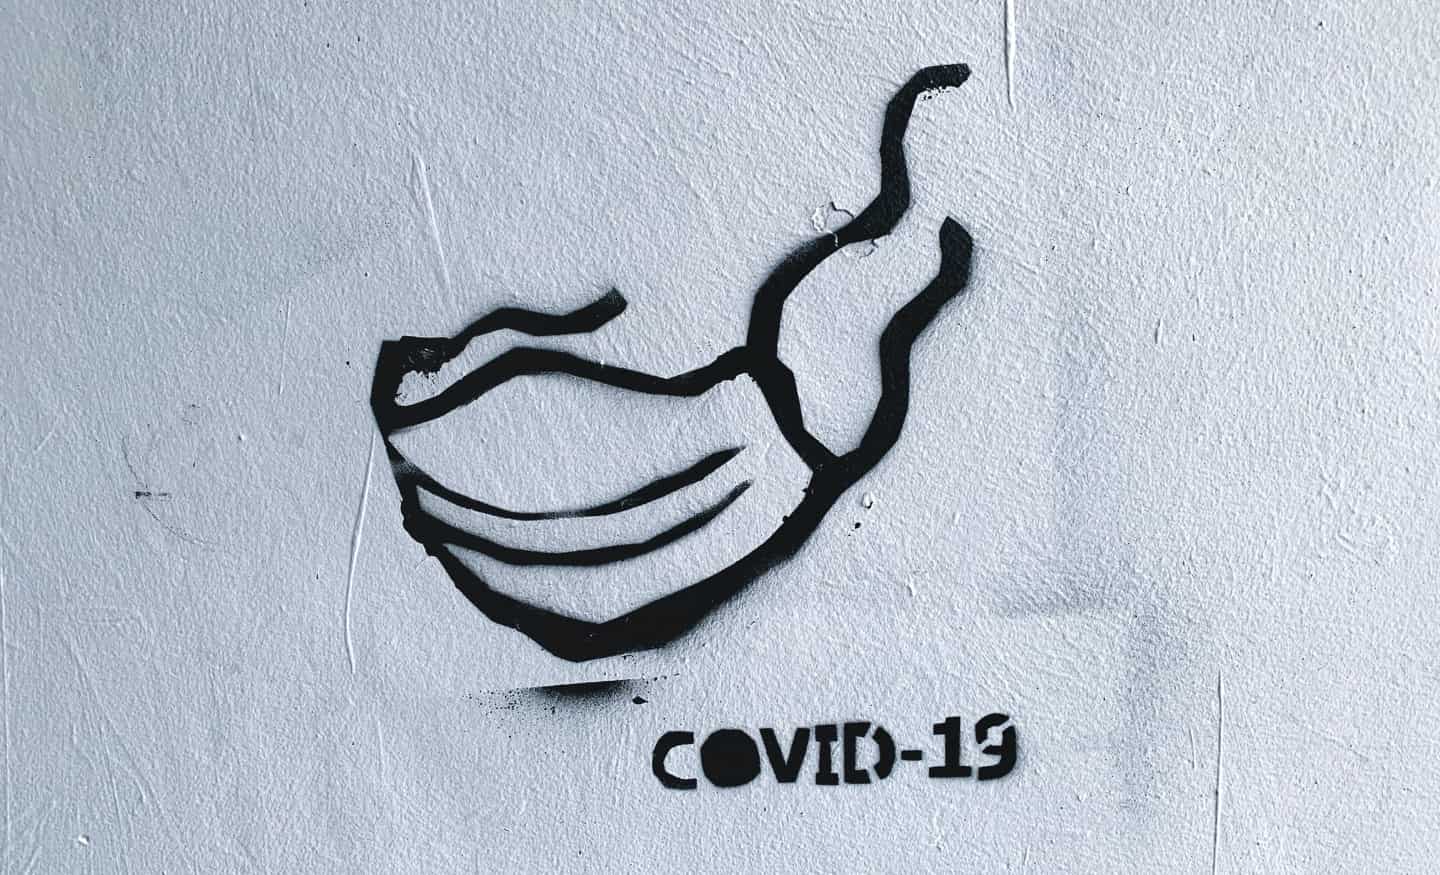 COVID-19 mask graphic